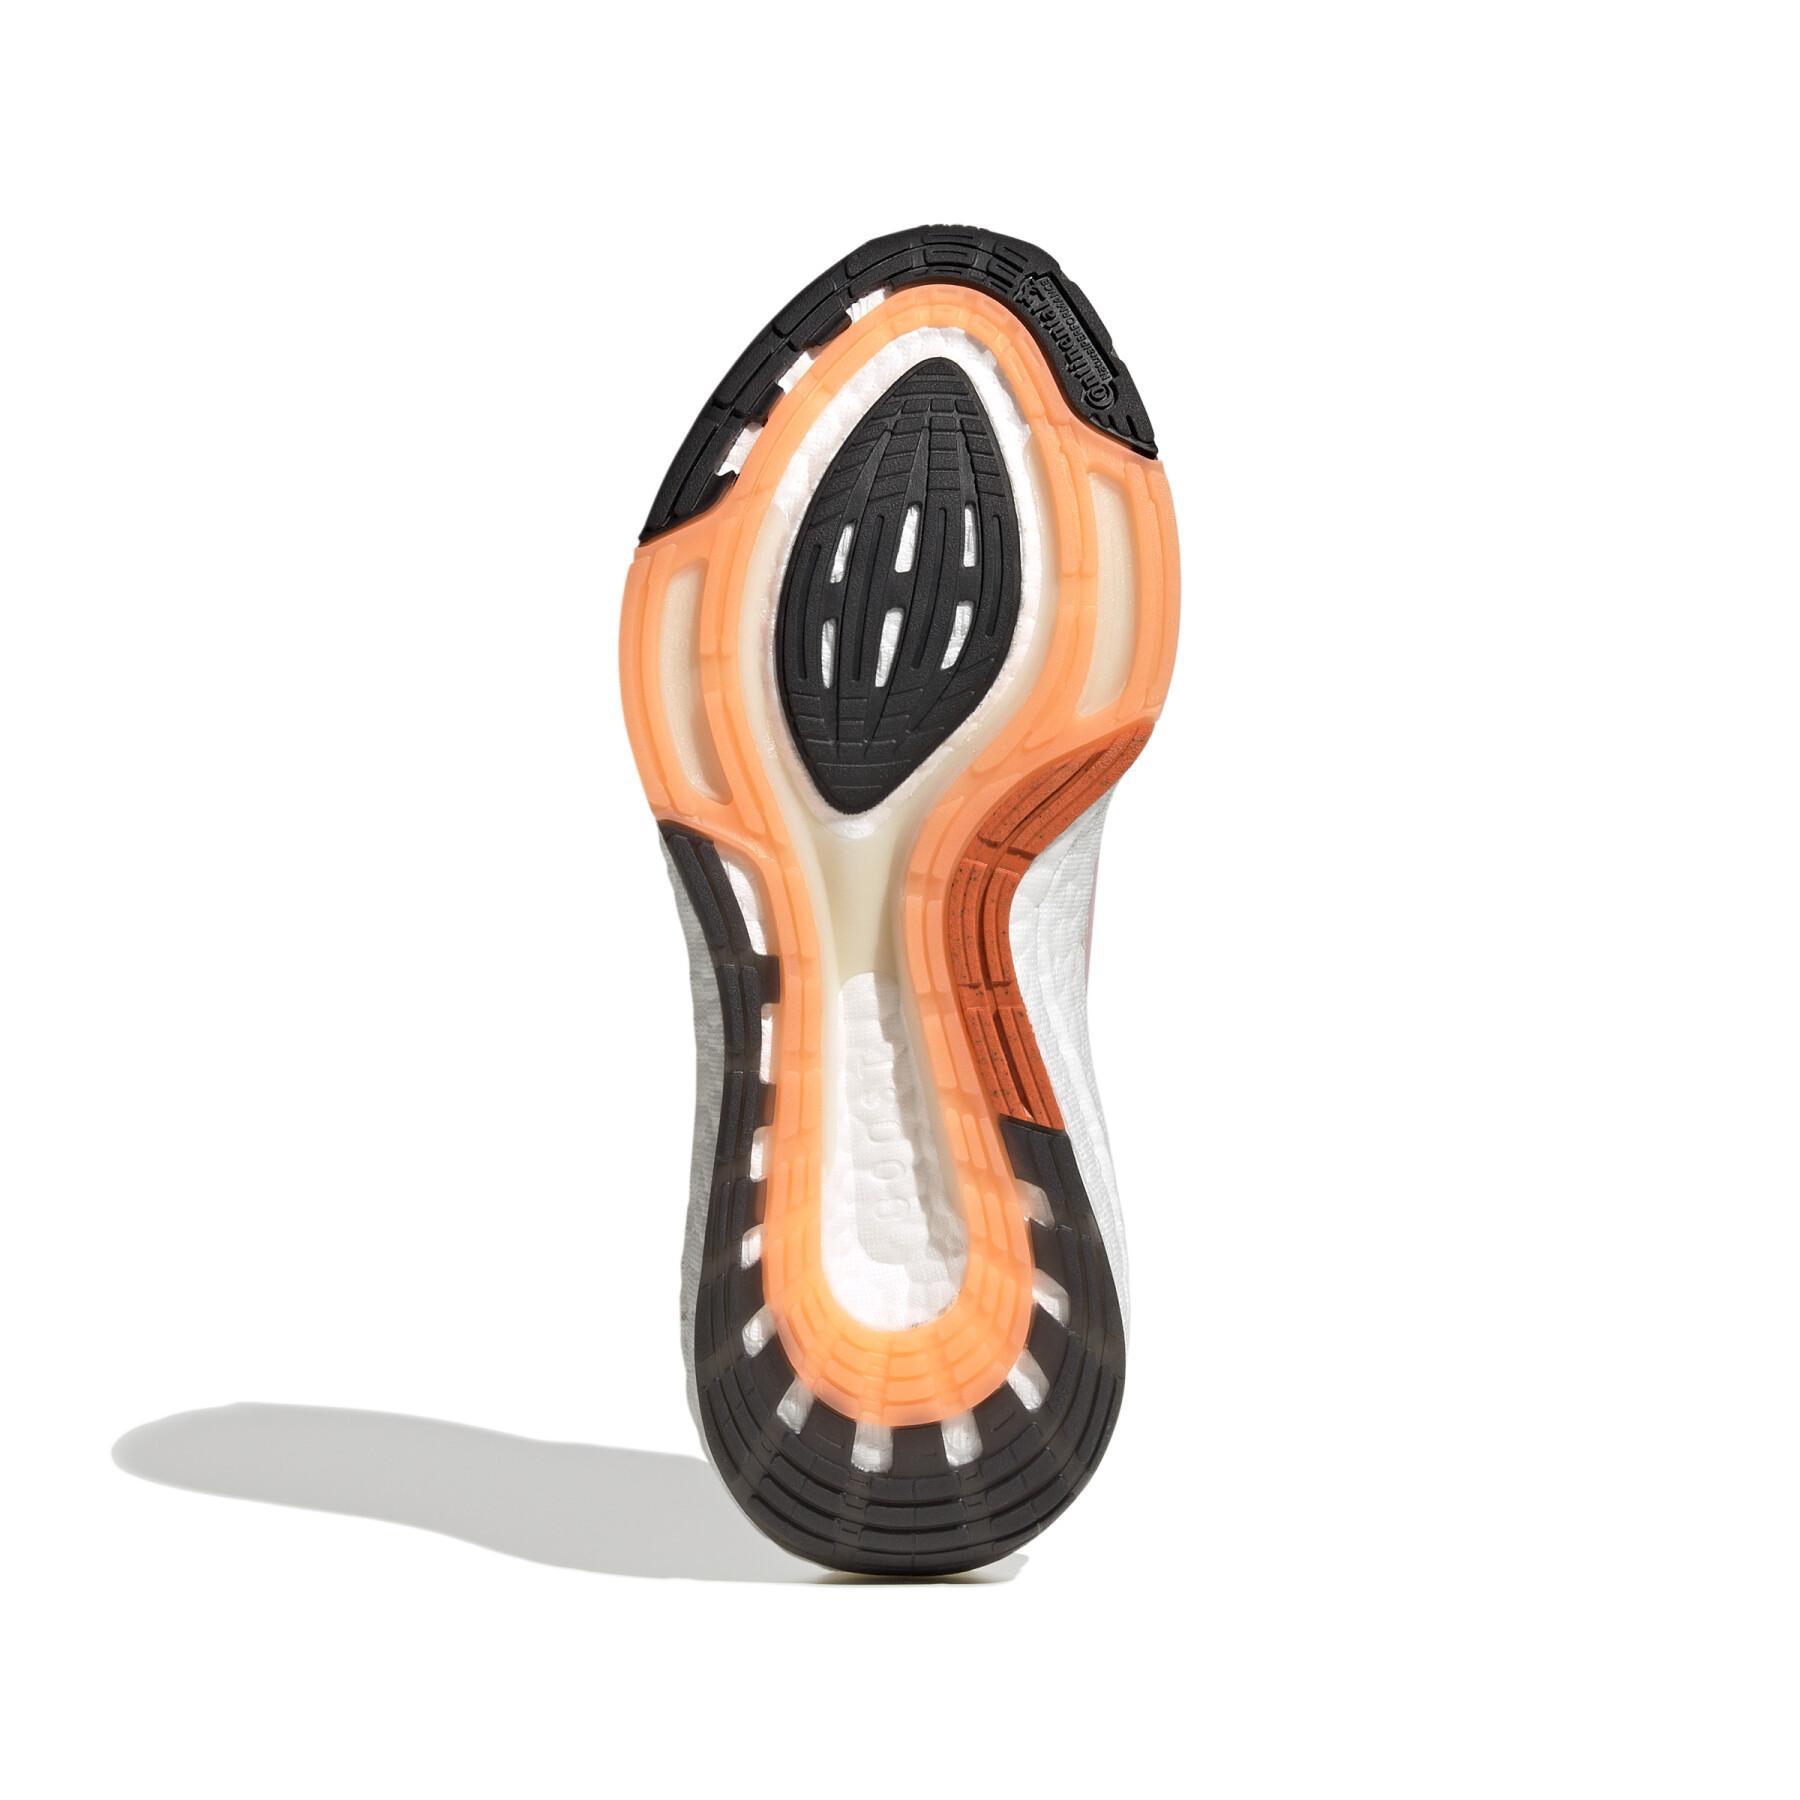 Chaussures de running femme adidas Ultraboost 22